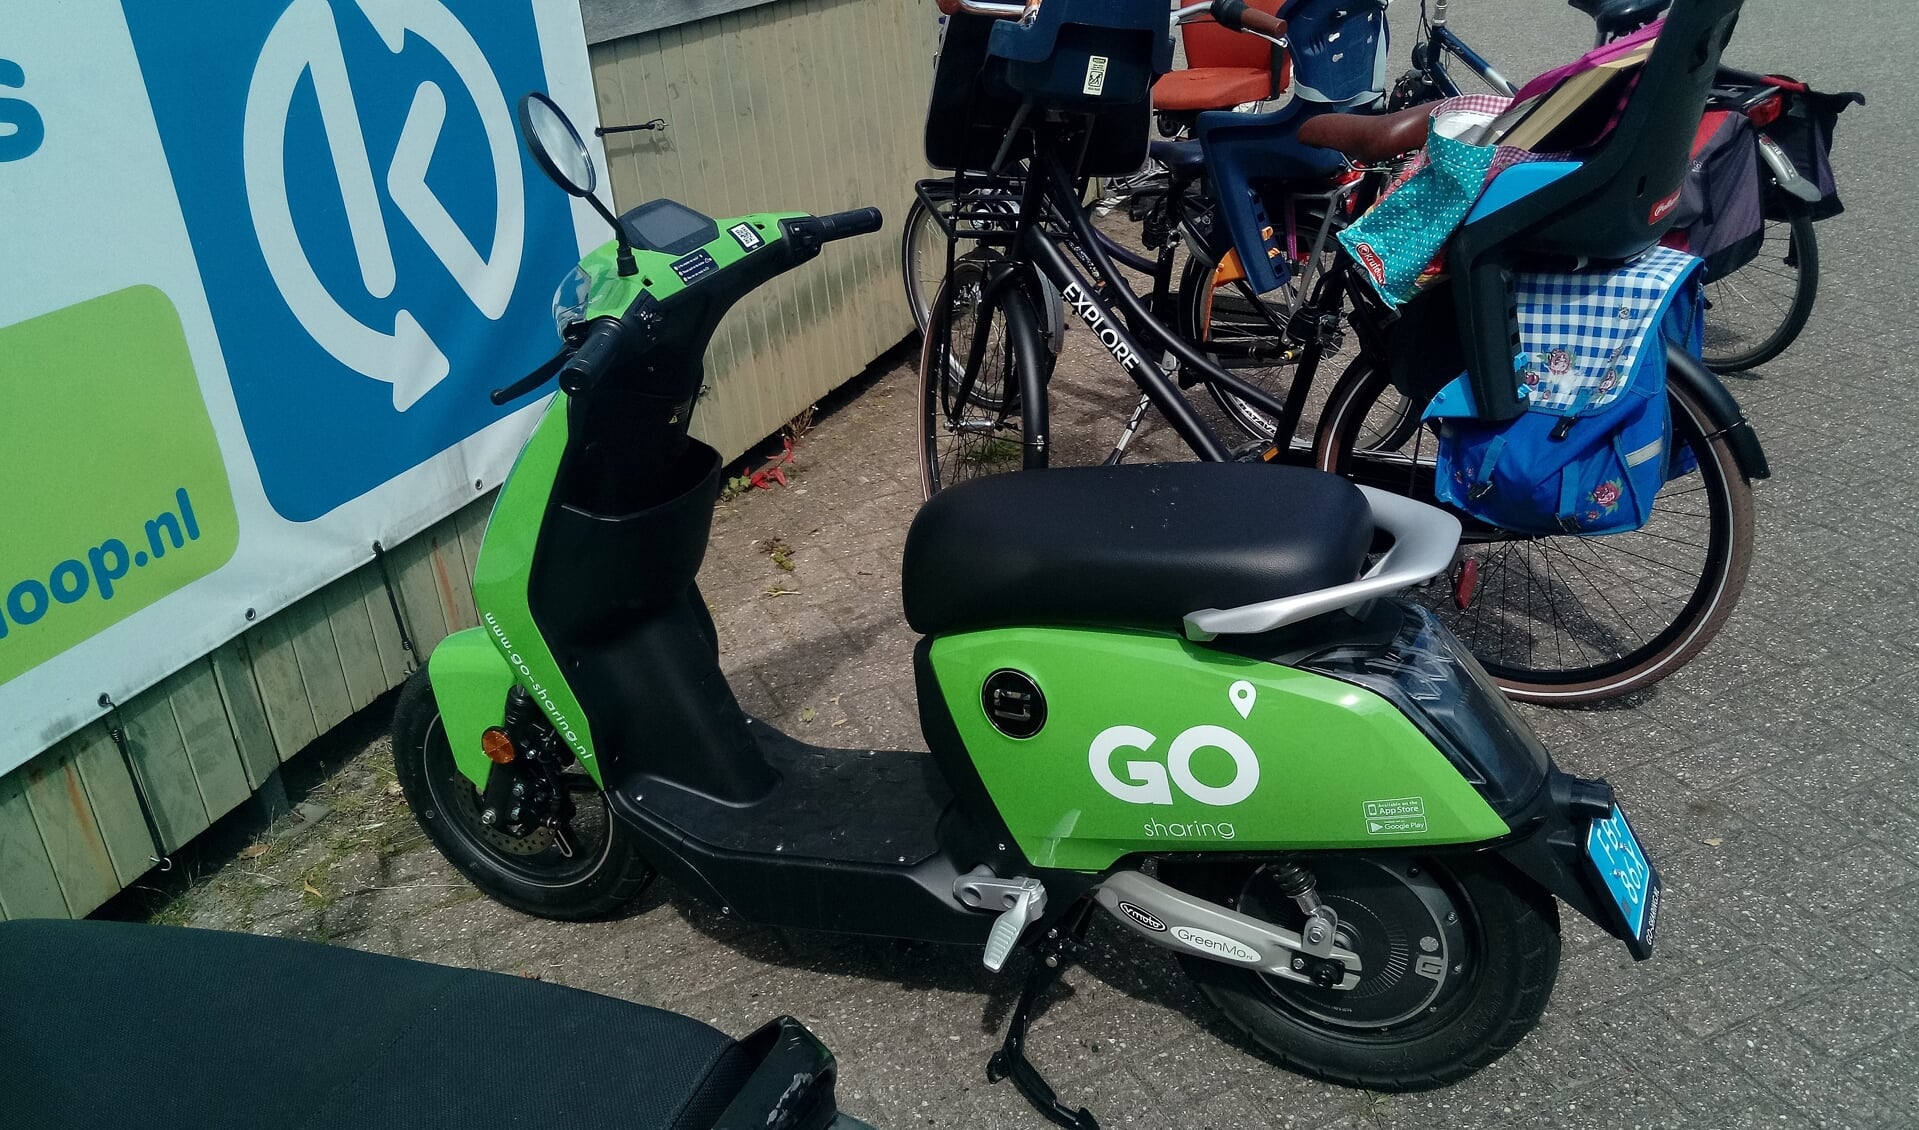 De GoSharing scooter is een vorm van deelvervoer.